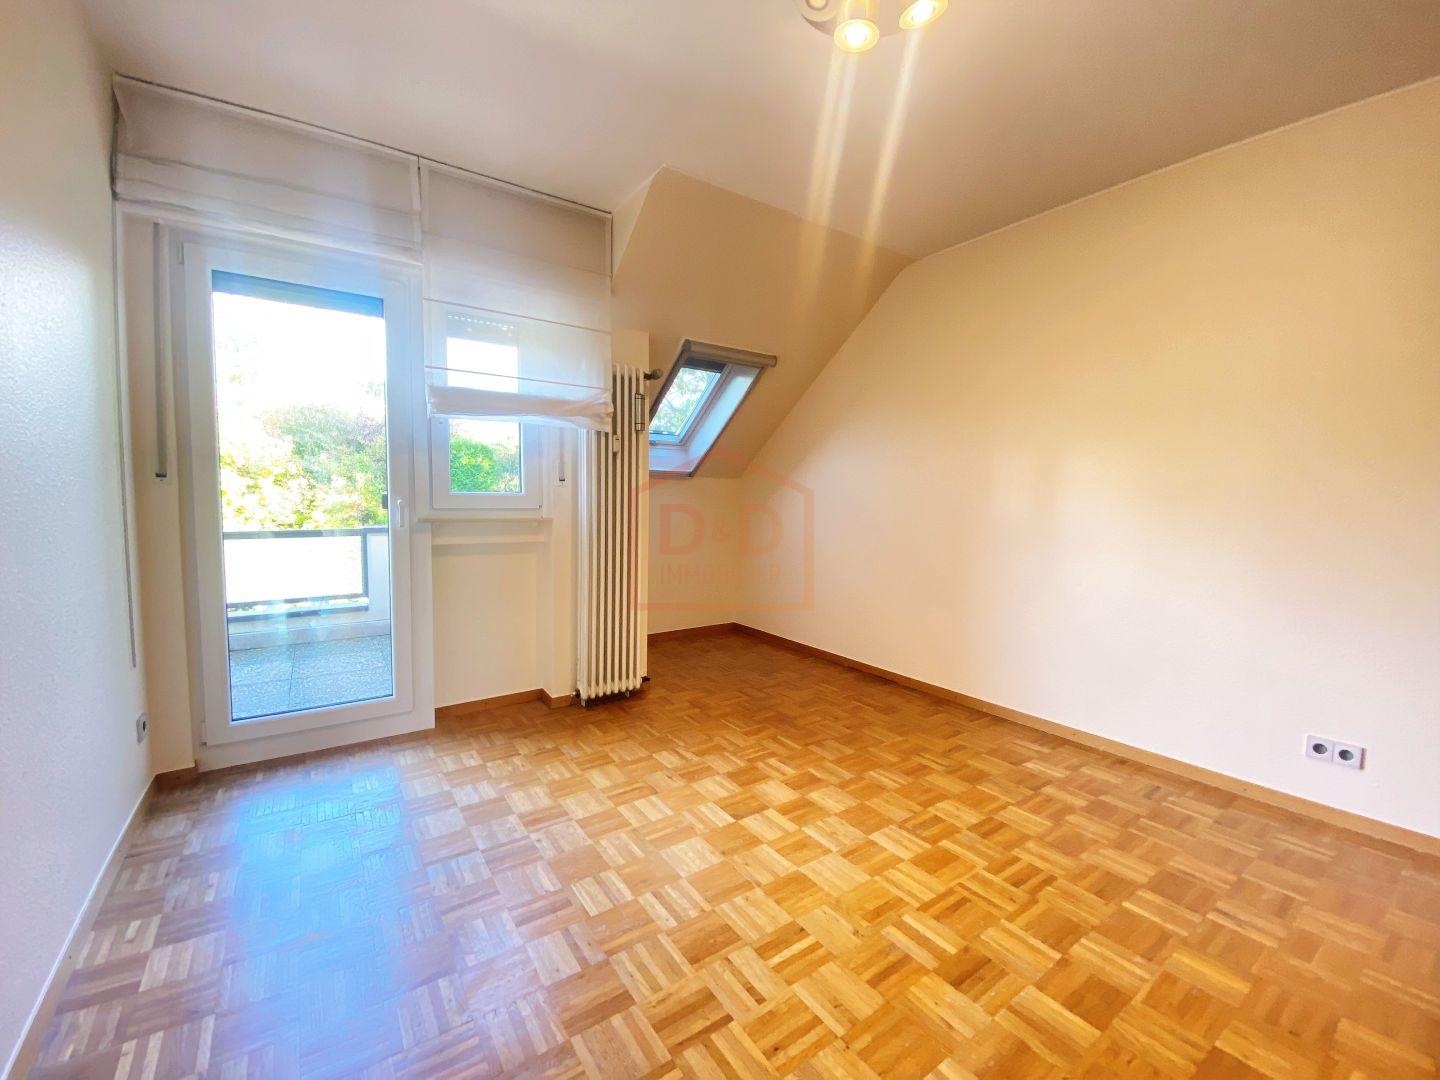 Appartement à Bergem, 90 m², 2 chambres, 1 salle de bain, 1 650 €/mois